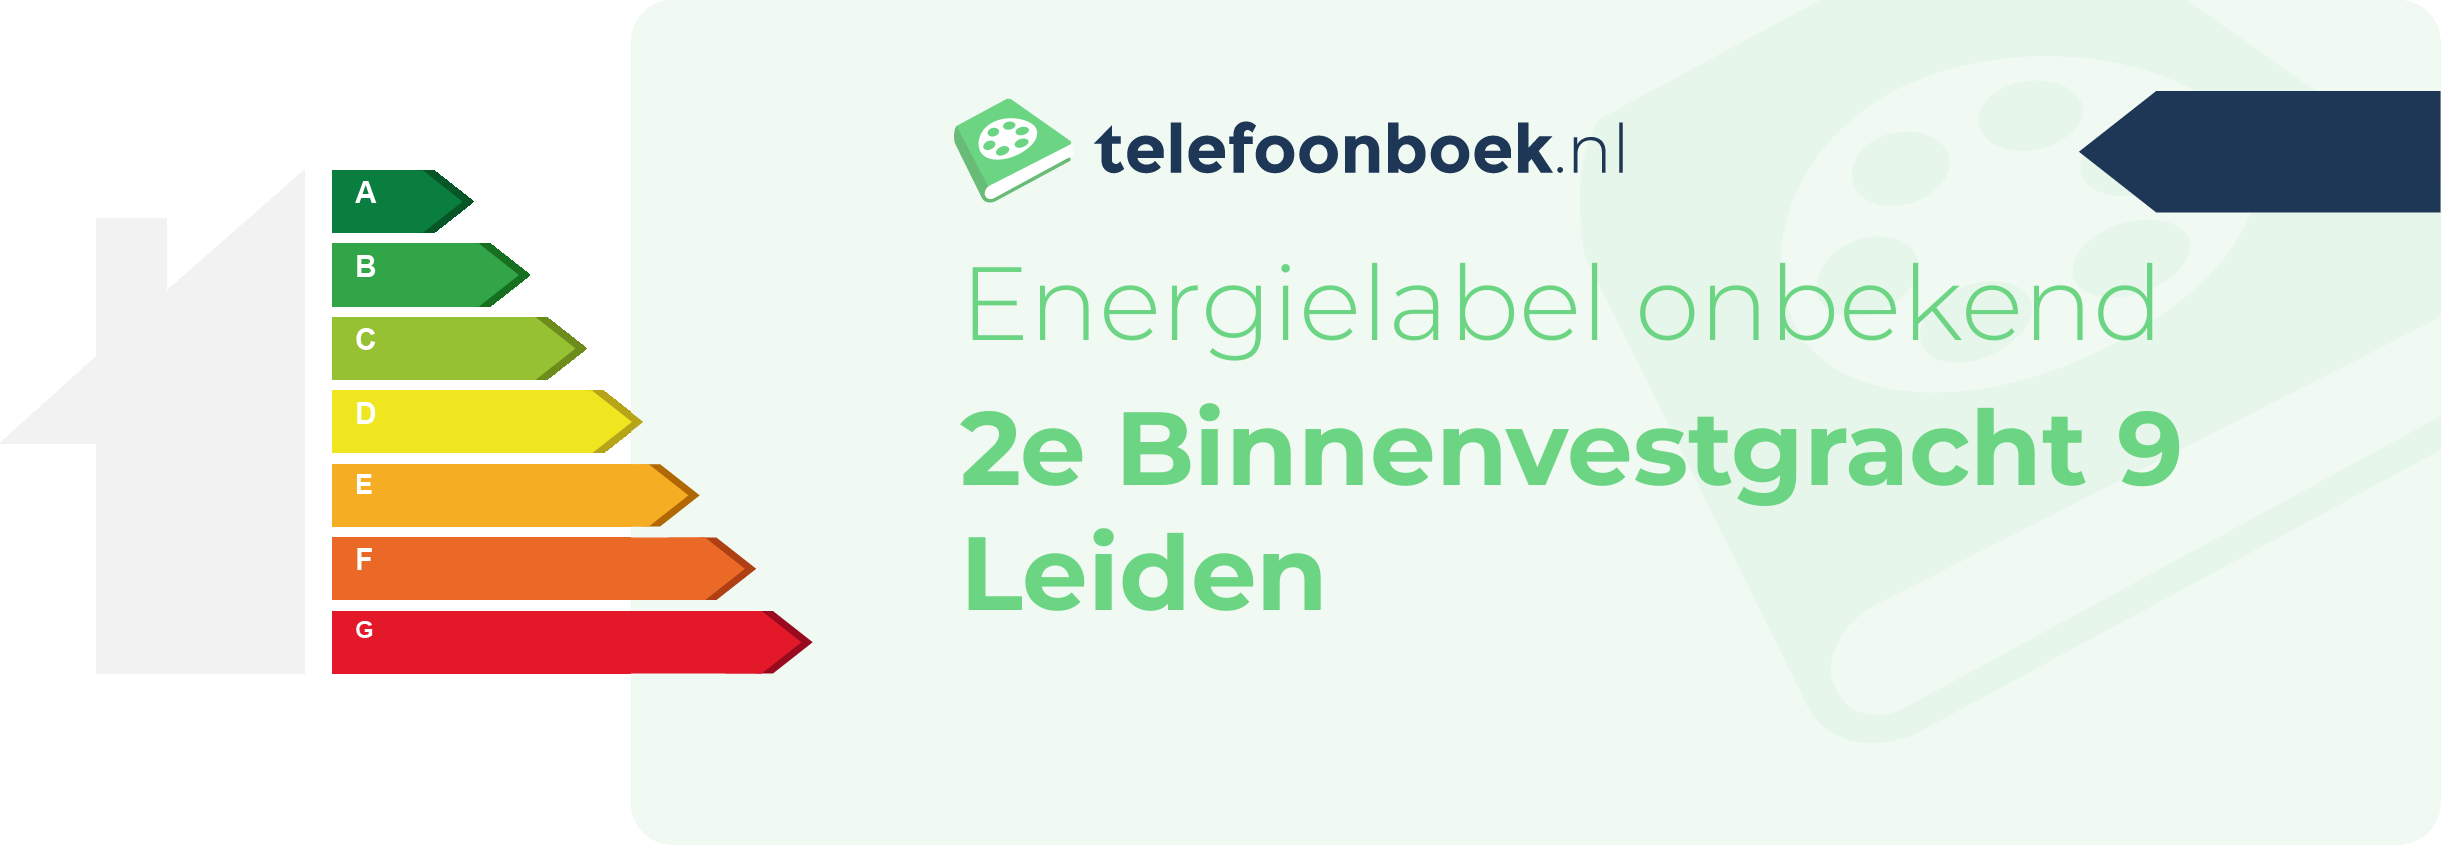 Energielabel 2e Binnenvestgracht 9 Leiden